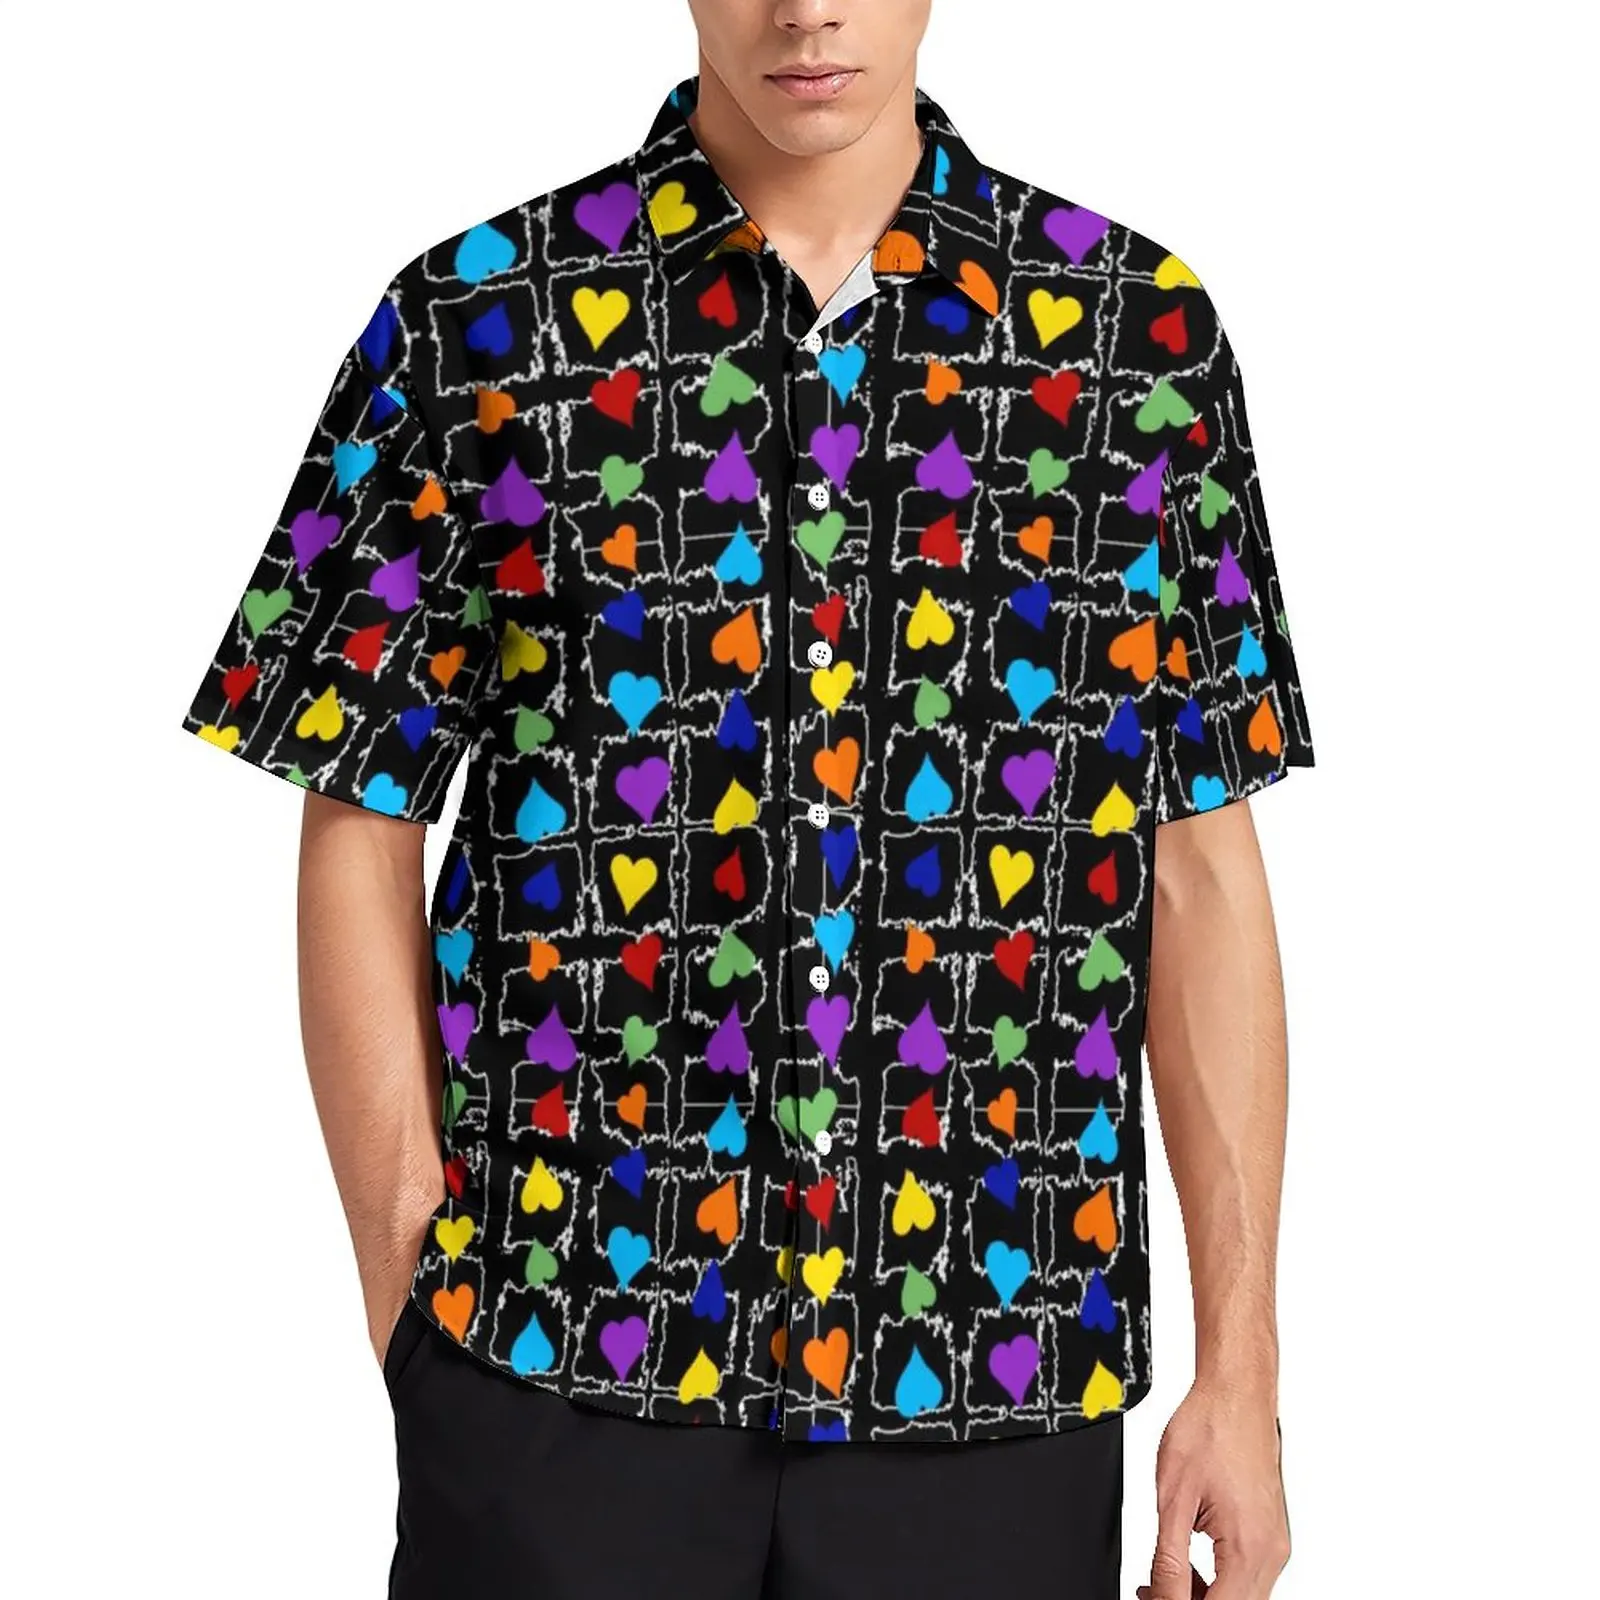 

Женская Повседневная рубашка Pride Rainbow Hearts ЛГБТ, Пляжная Свободная рубашка, винтажные блузки с коротким рукавом, Одежда большого размера с графическим принтом